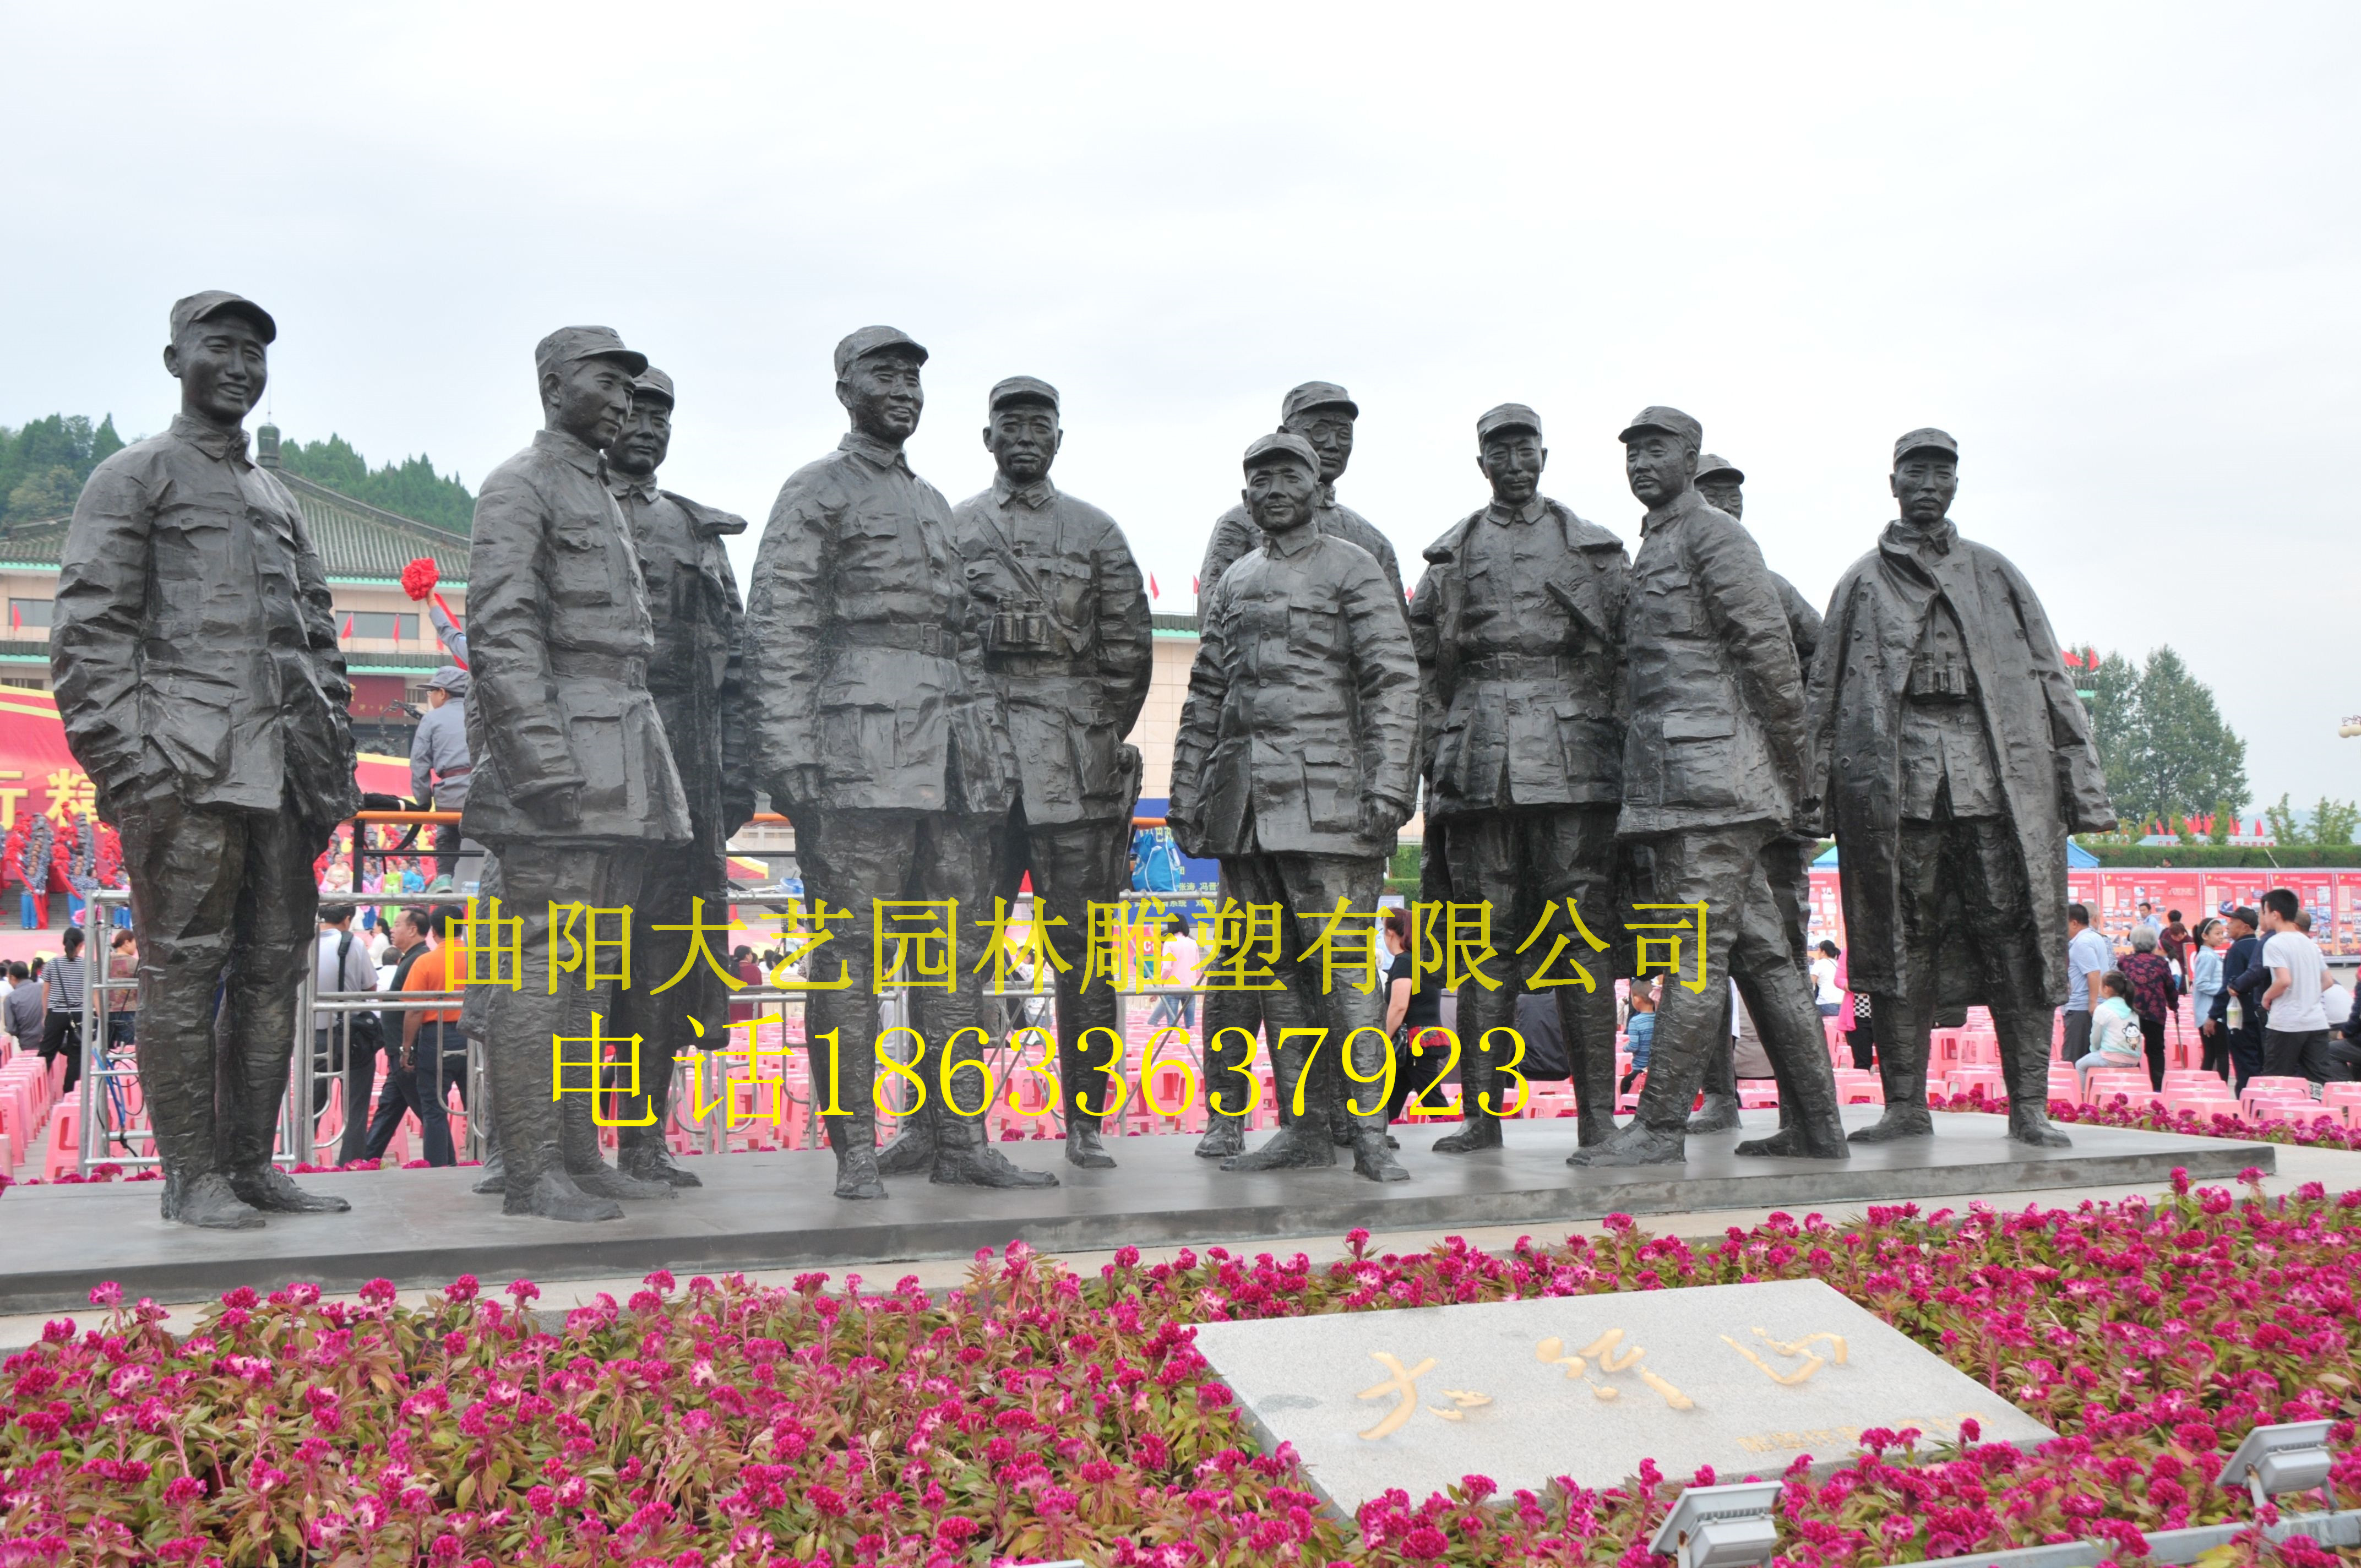 八路军人物雕塑厂家 八路军人物雕塑价格 八路军人物雕塑定做公司